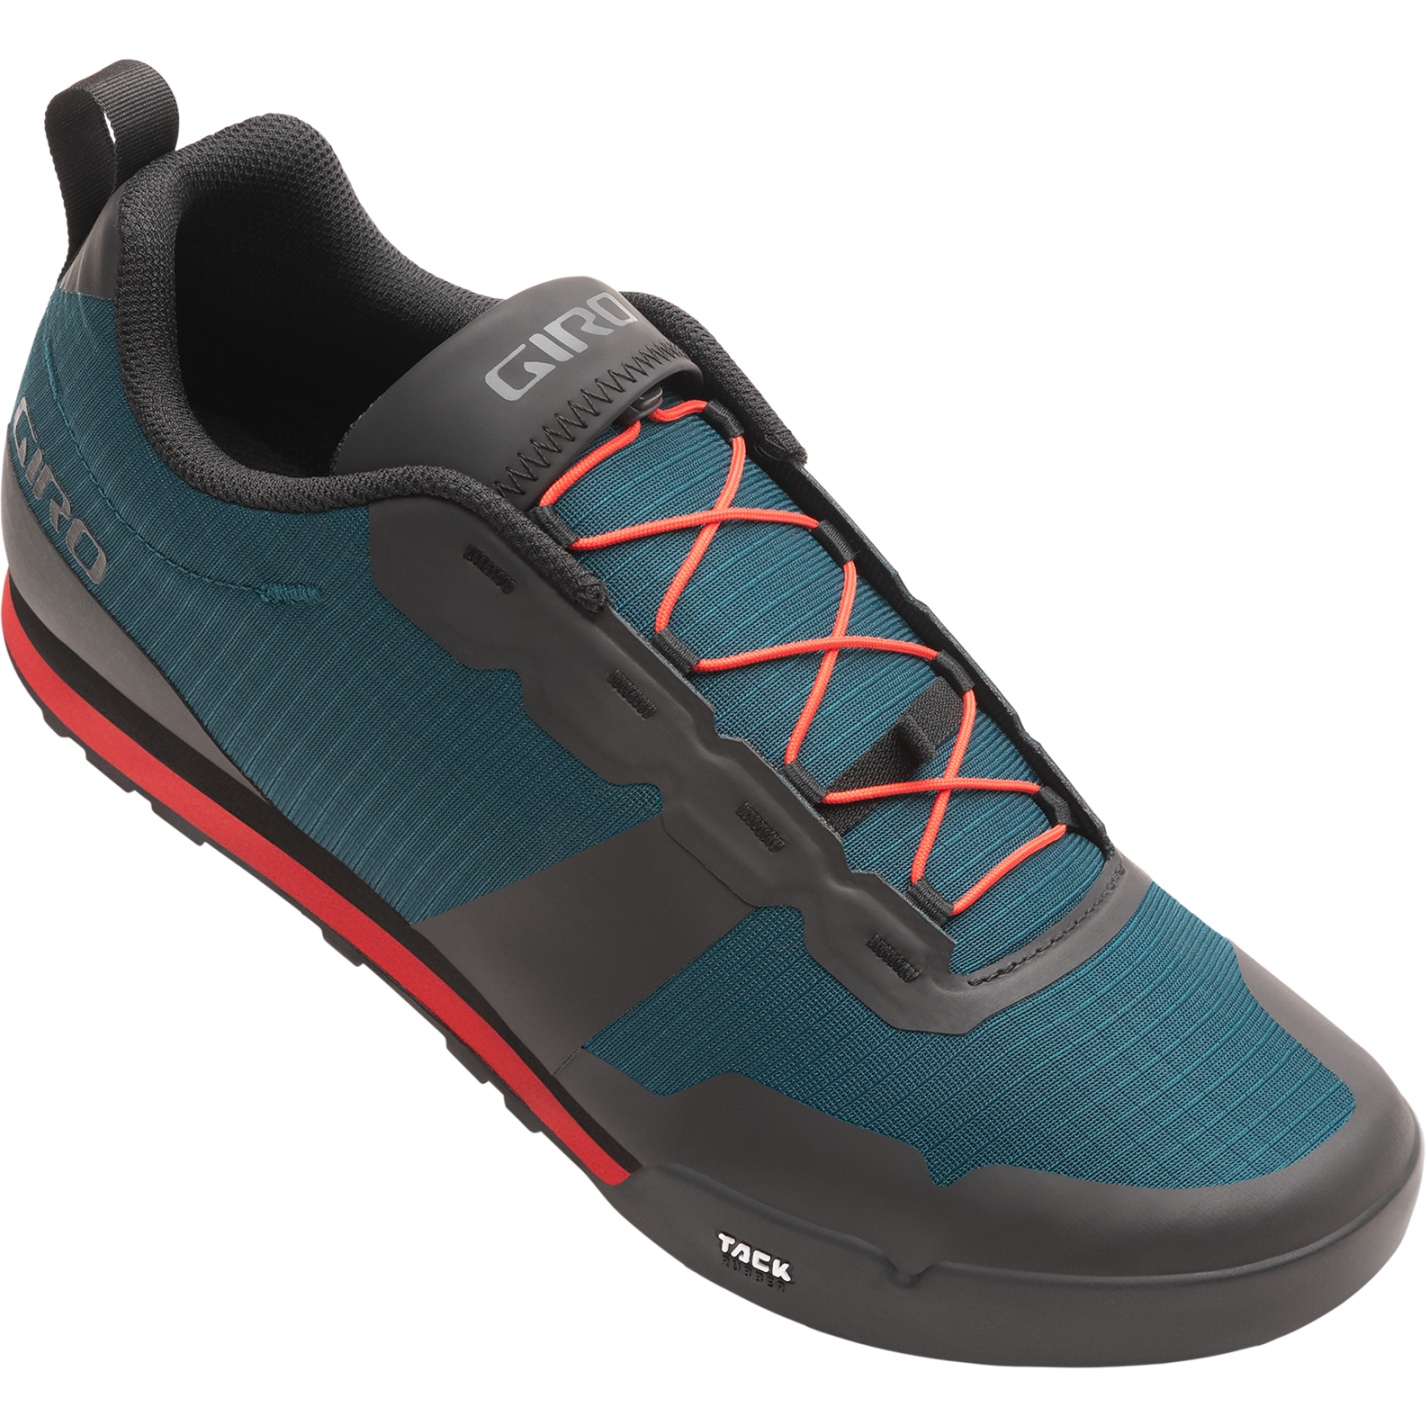 Productfoto van Giro Tracker Fastlace Flatpedal Schoenen Heren - harbor blue/bright red